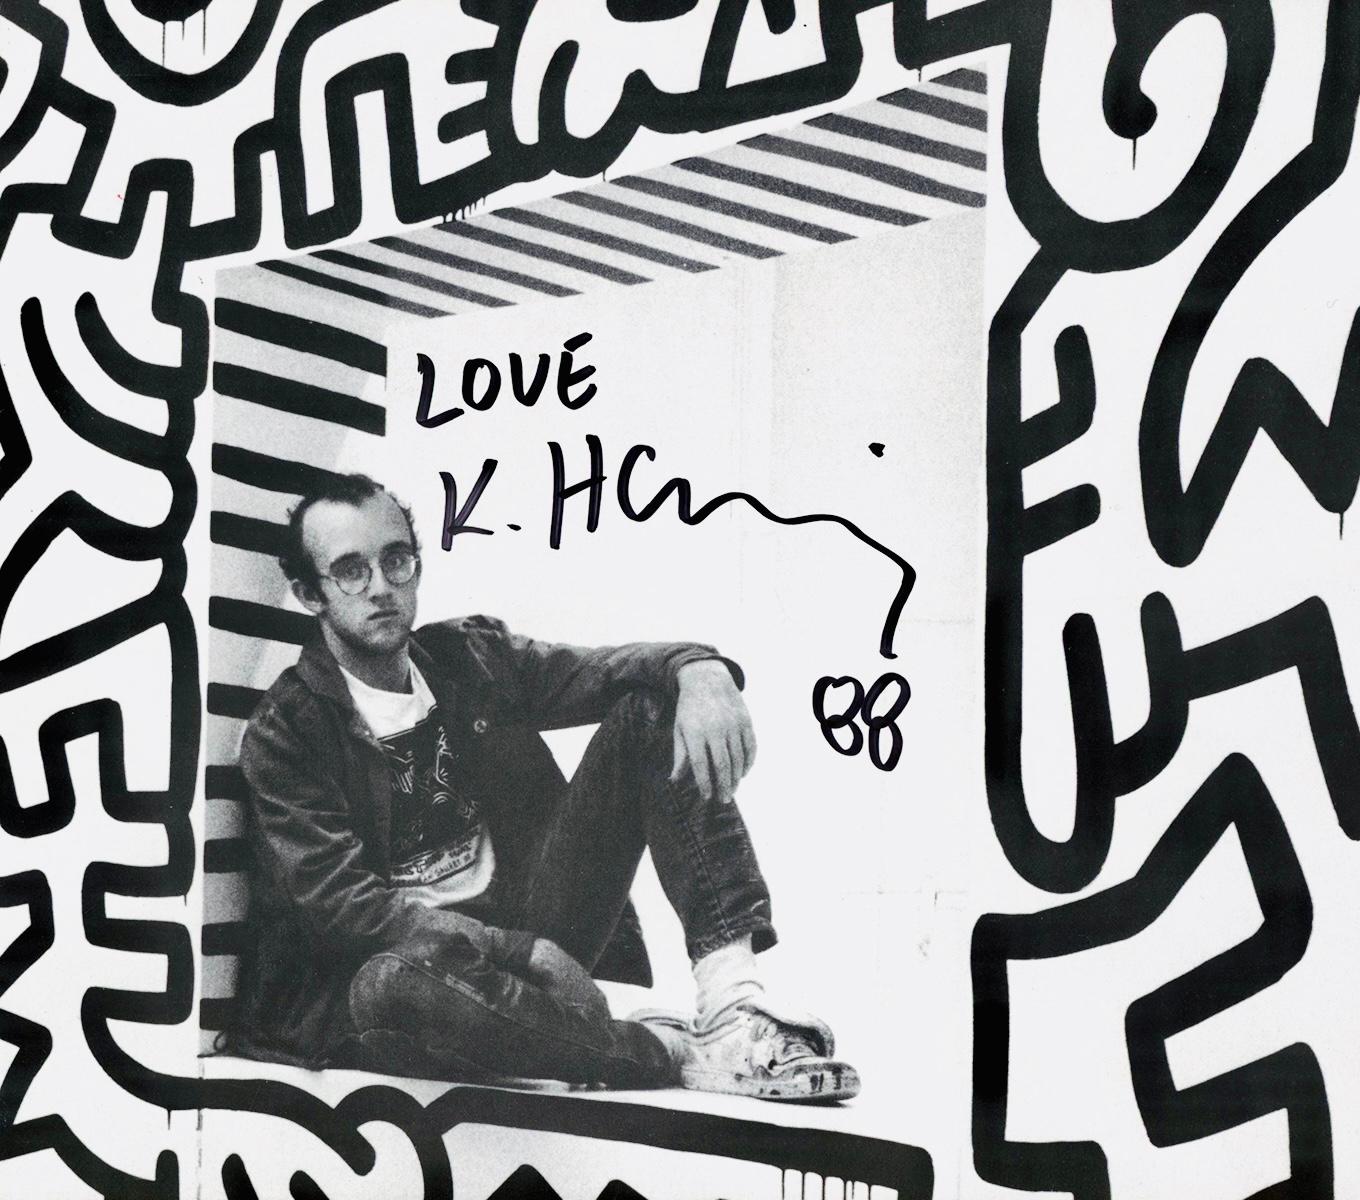 Affiche signée Keith Haring Pop Shop 1988 :
Affiche historique du Pop Shop de Keith Haring des années 1980/ catalogue dépliable (verso), portant l'attachante inscription " Love K. Haring 88 " au marqueur noir et la signature de l'artiste dans un